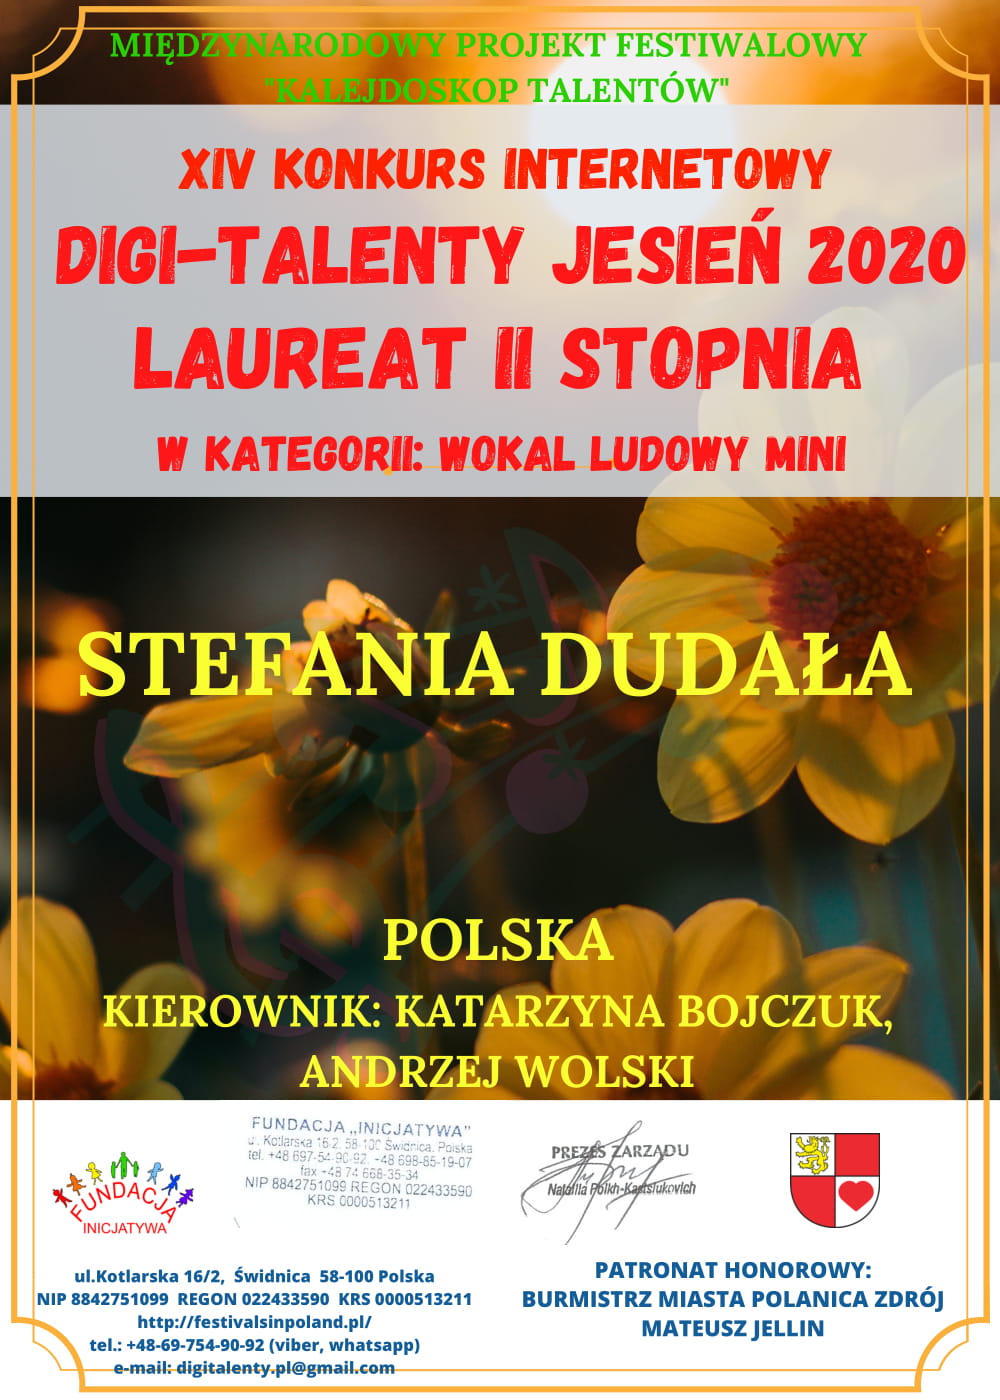 Stefania Dudała wokal ludowy IIm 1